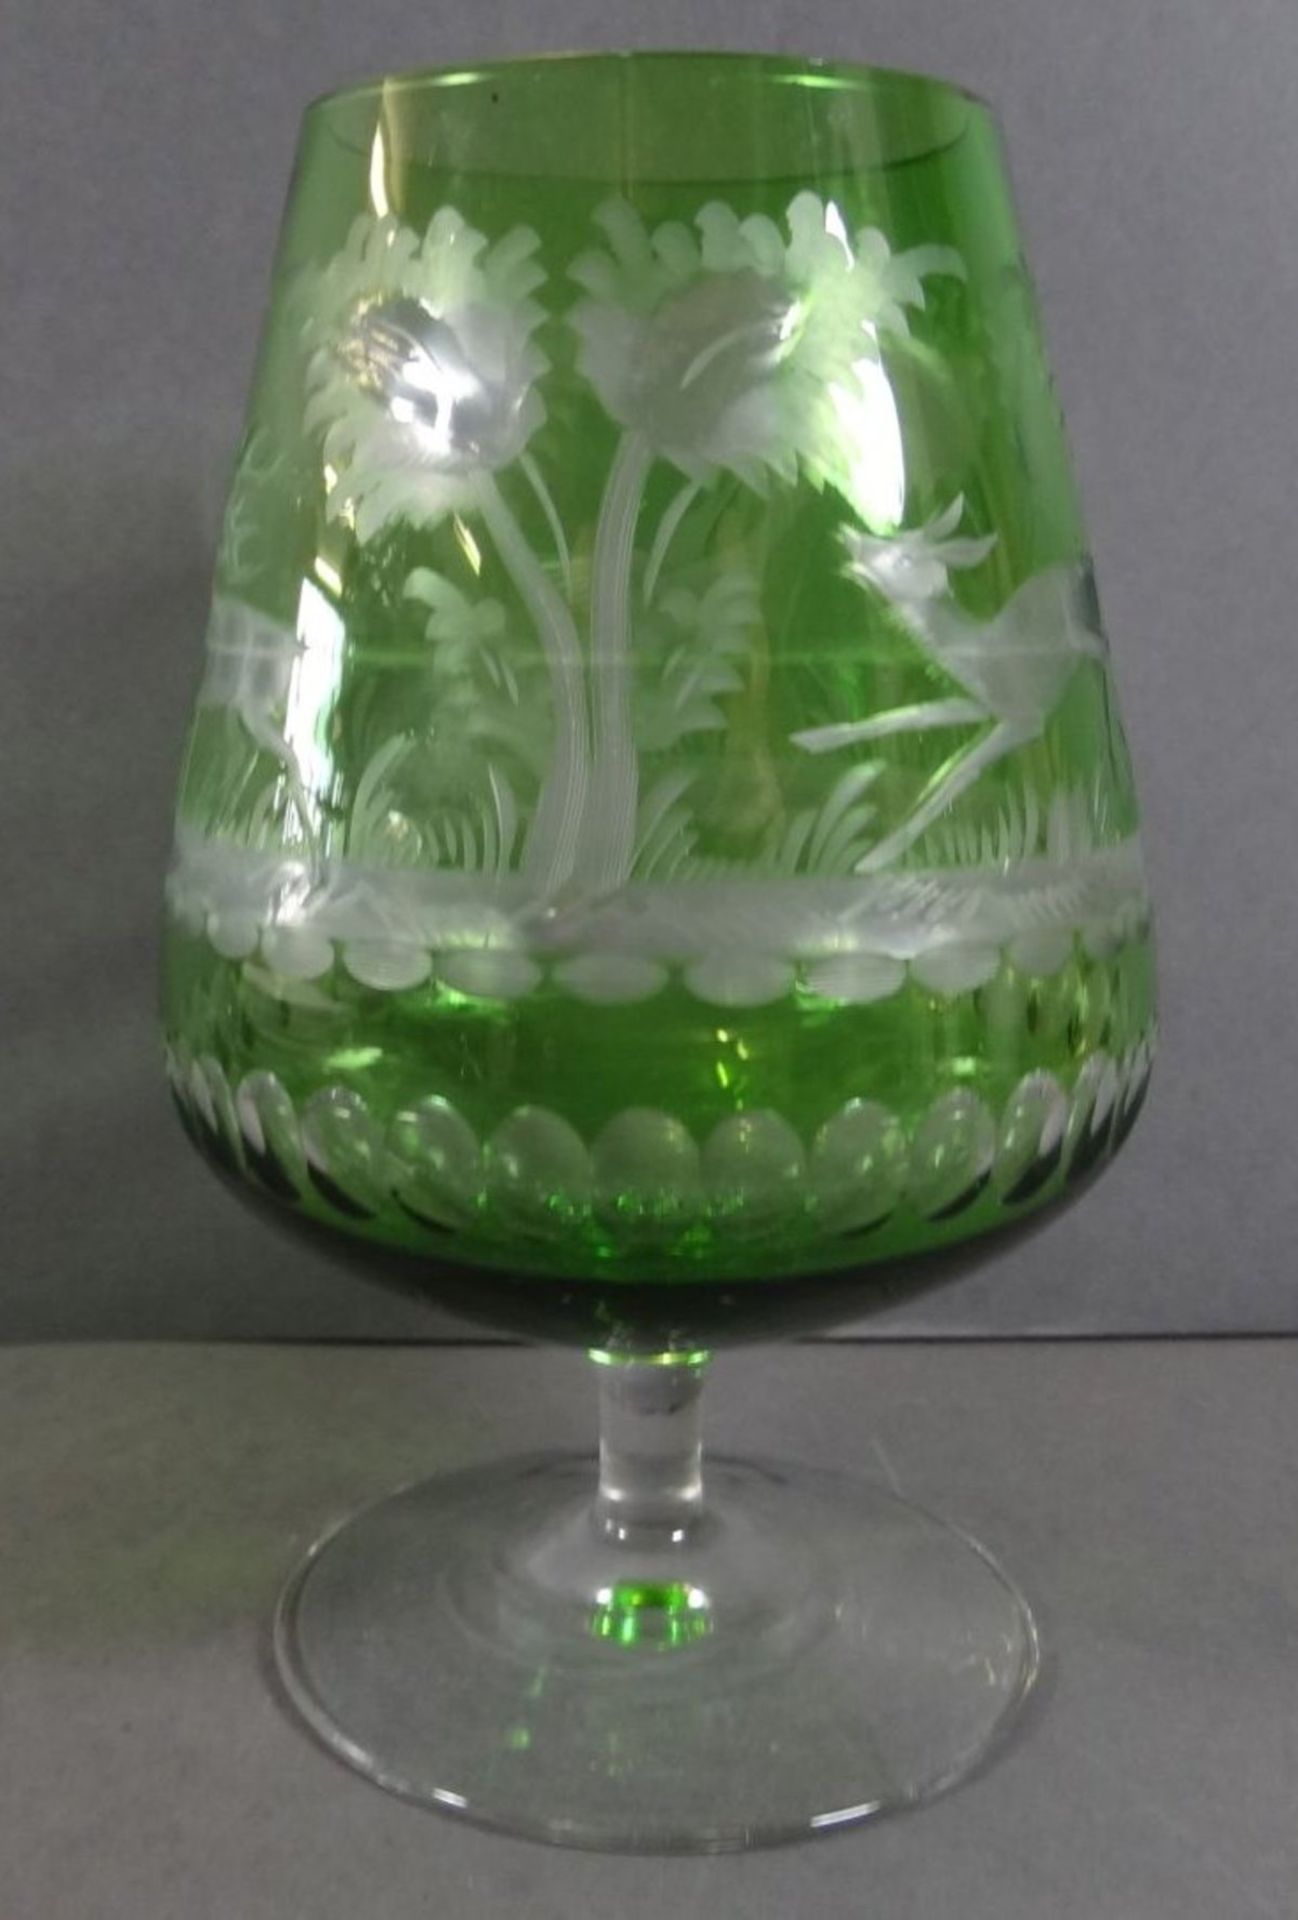 übergrosser Cognac-SDchwenker, grün-klar mit Wild-Motiven, H-18 cm